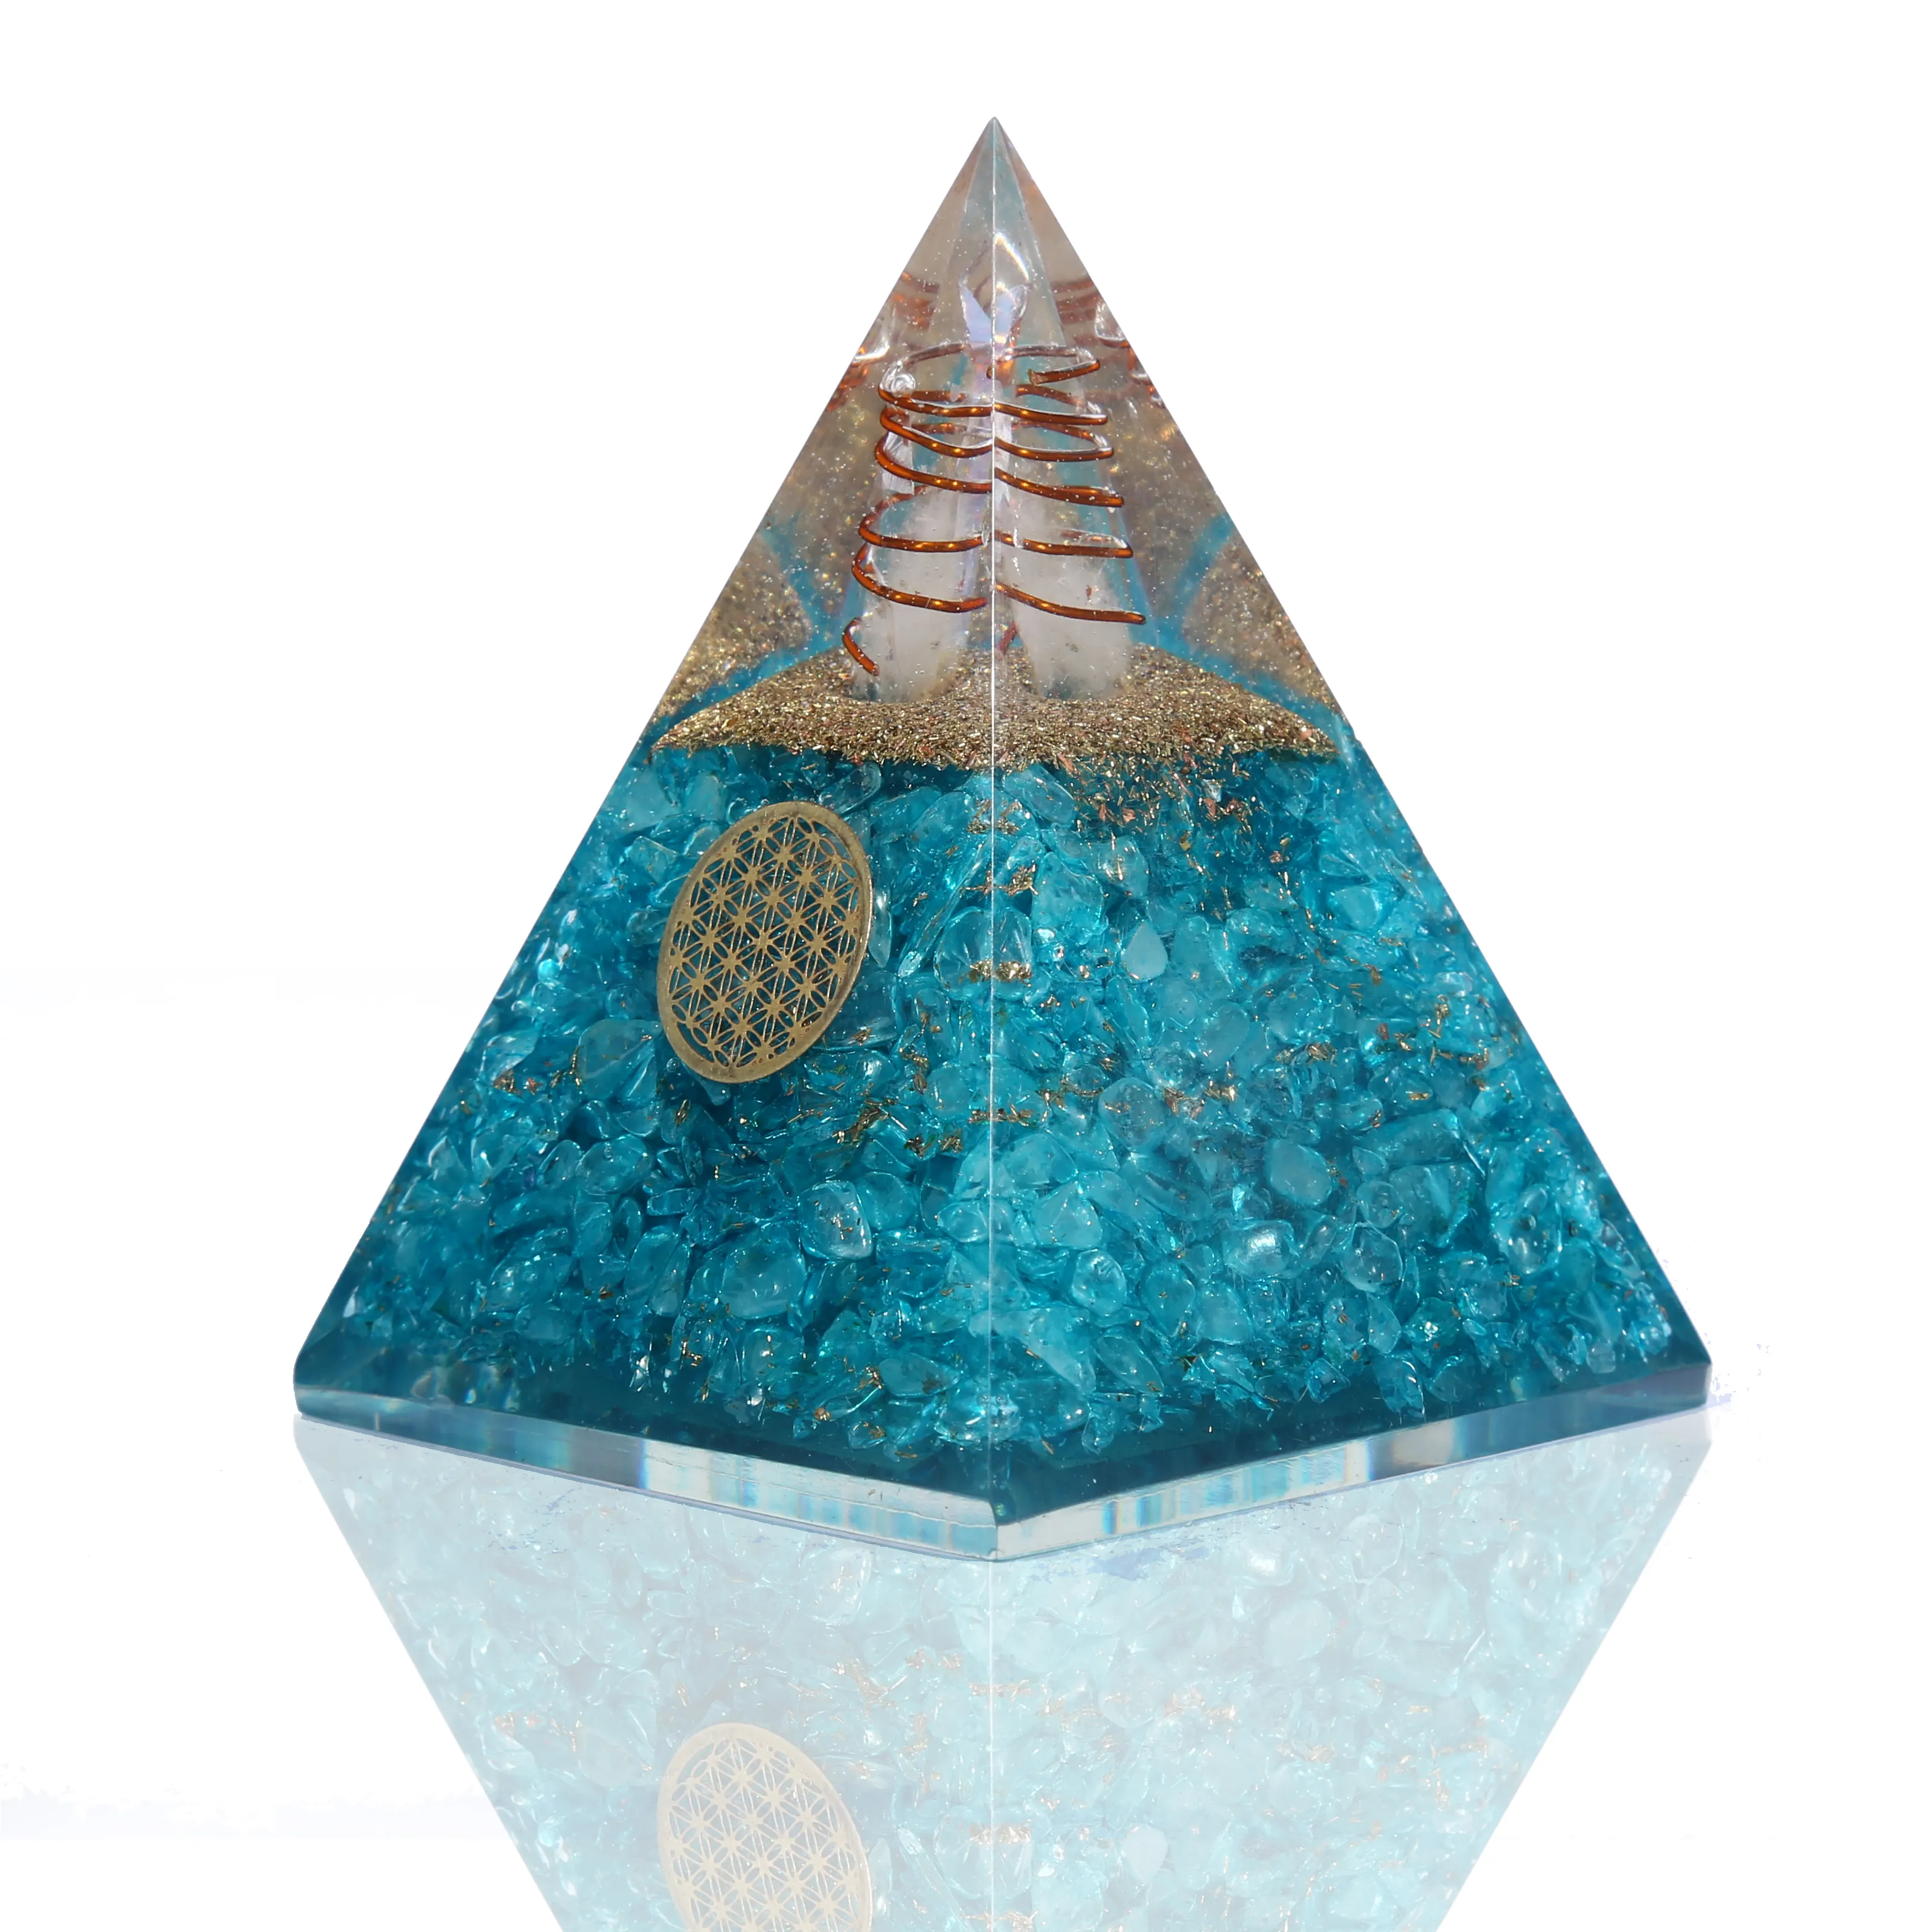 オーゴナイトヌビアンアクアピラミッドEMF保護オルゴーンピラミッド卸売オルゴナイト銅ピラミッド瑪瑙アクアボール